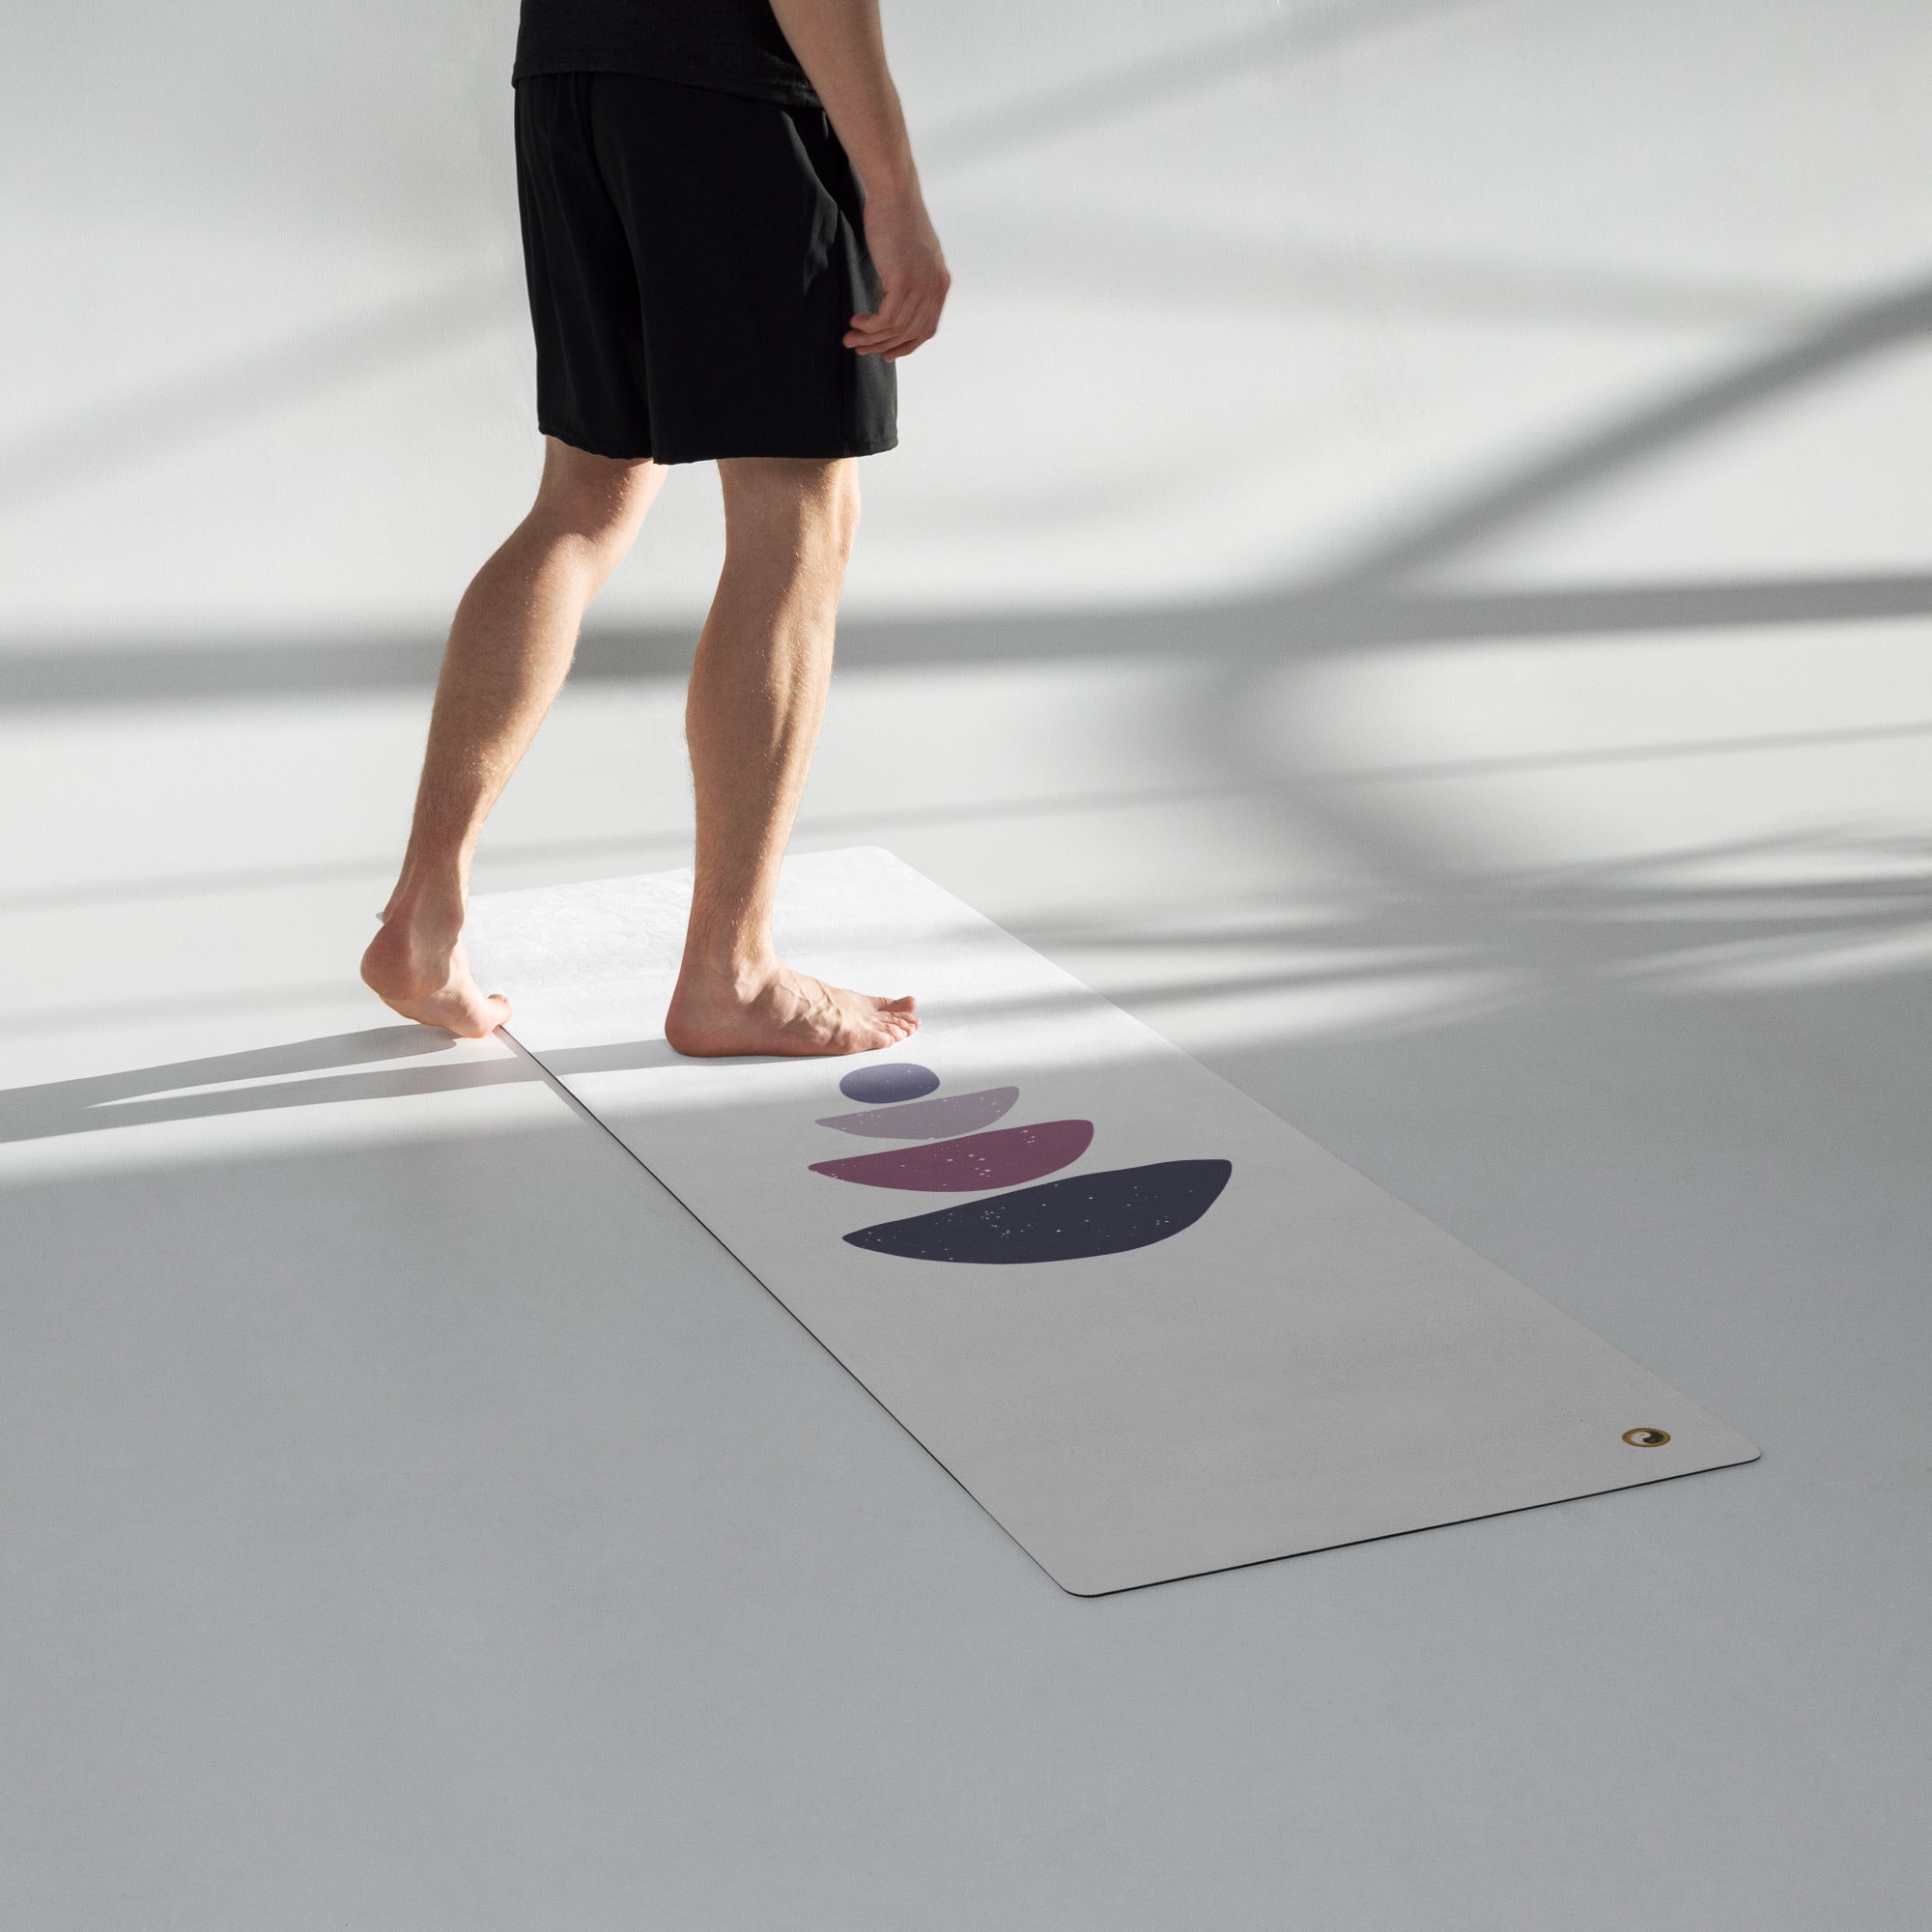 Premium  Anti Slip Rubber Yoga Mat - Yoga Principles - Personal Hour for Yoga and Meditations 